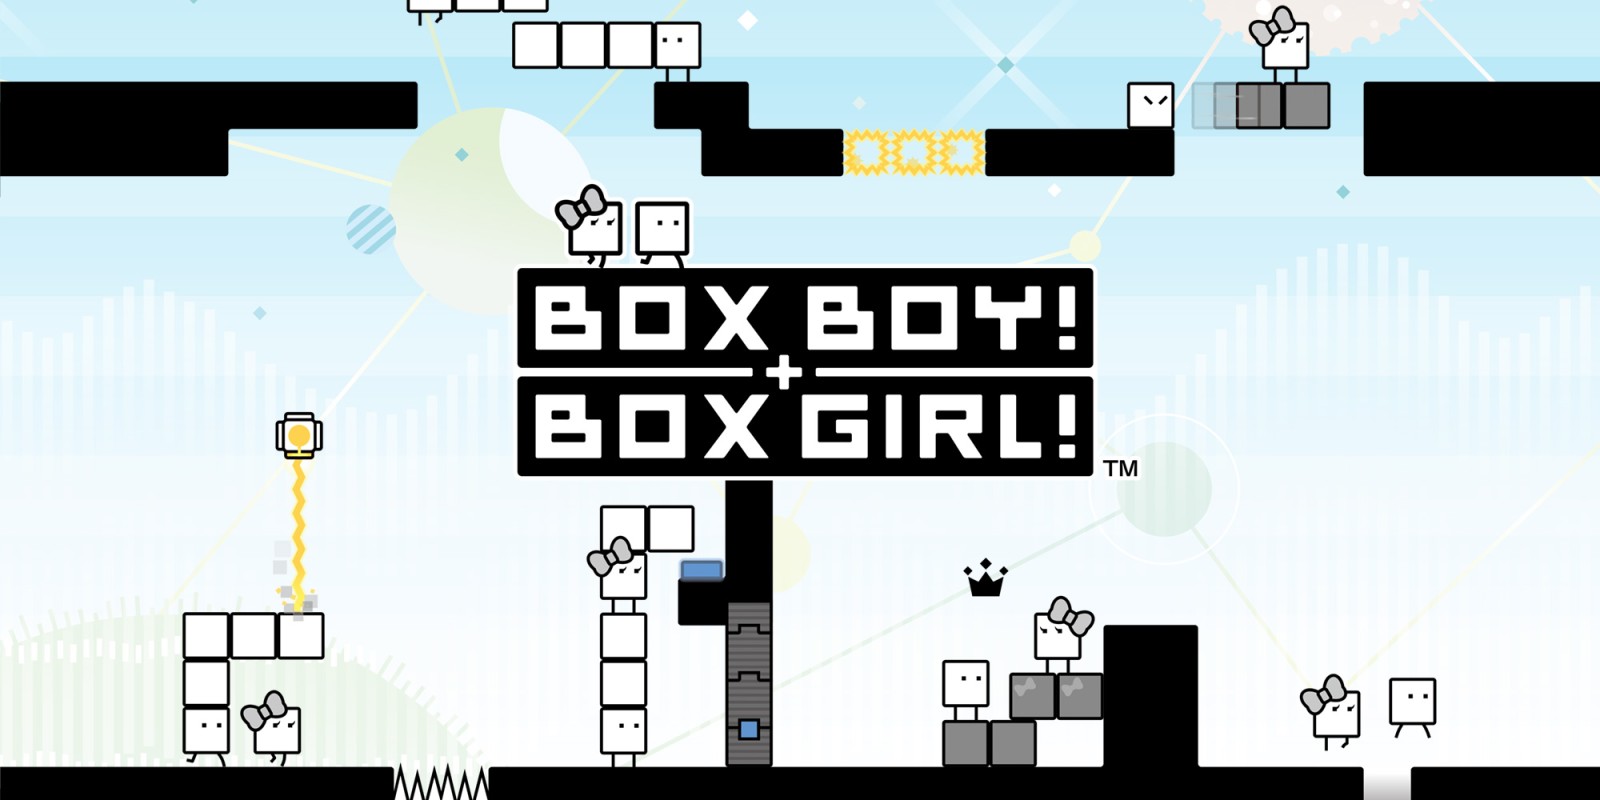 BOXBOY! + BOXGIRL! топ игры sega / сега онлайн и денди играть